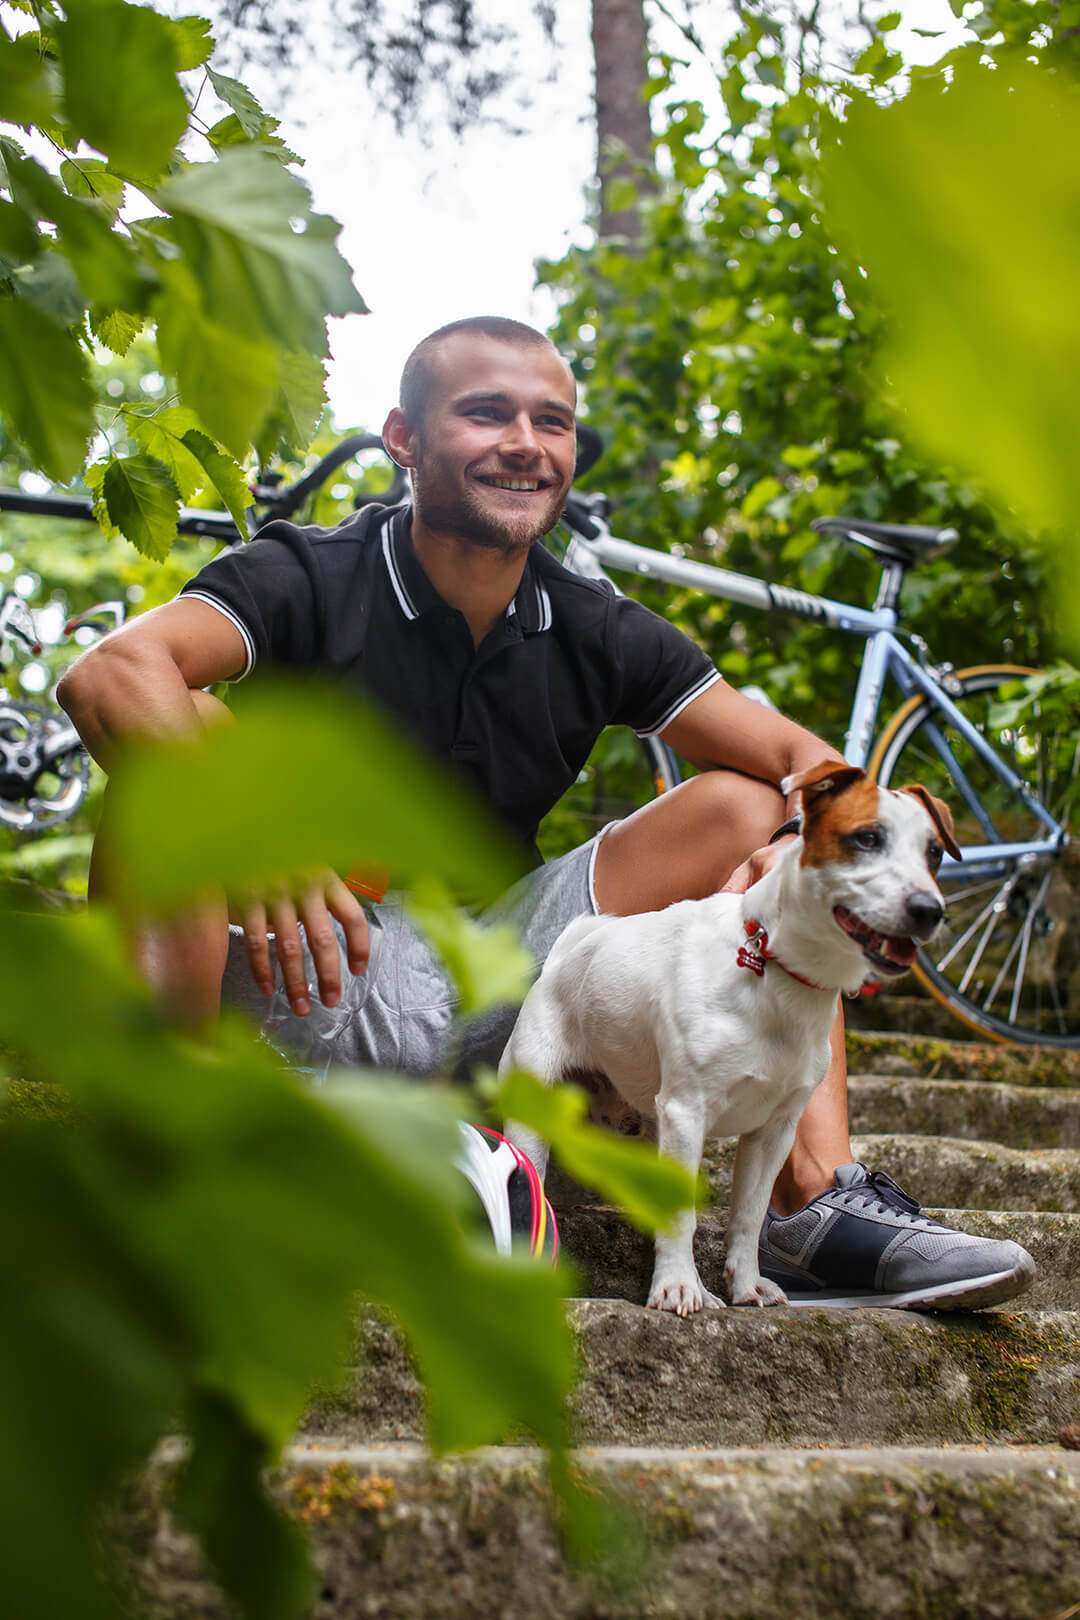 Urlaub mit Hund in der Villa Ottilienruh - Fahrradtour